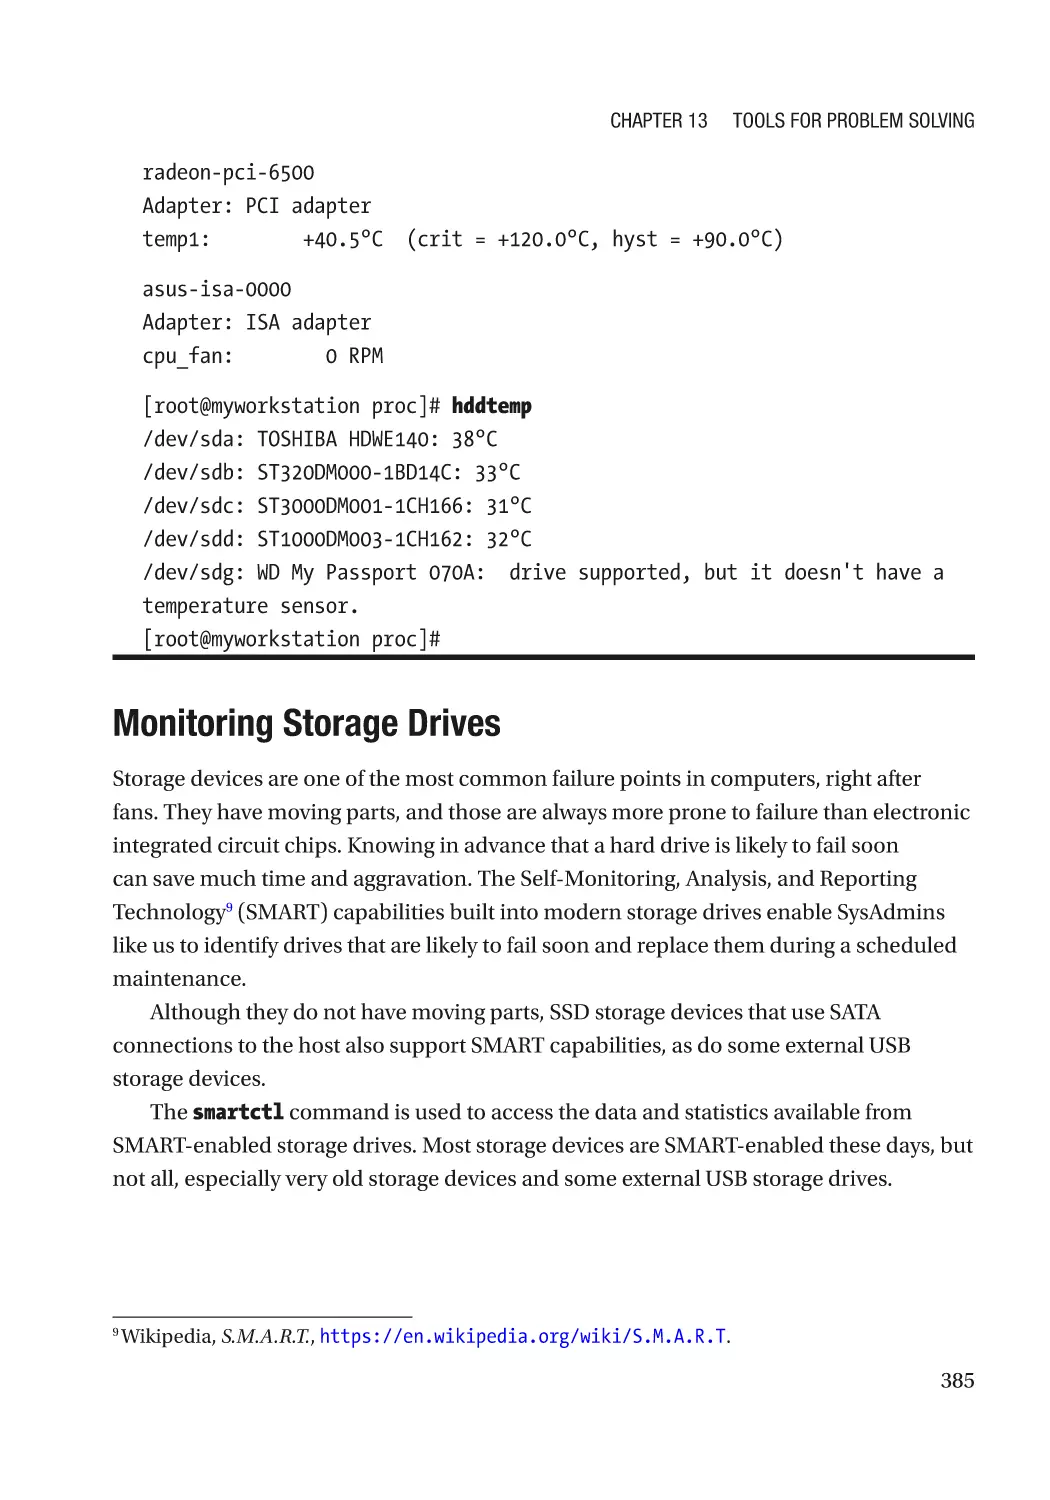 Monitoring Storage Drives